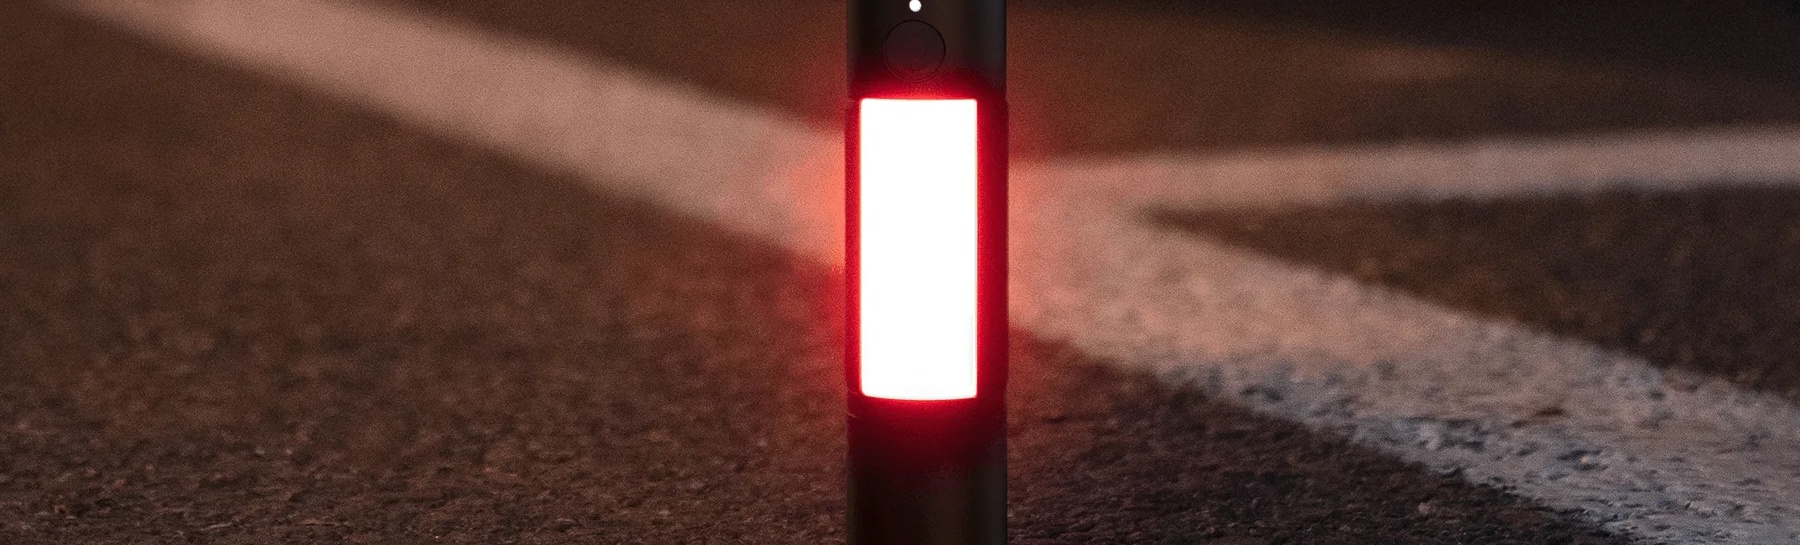 Cauți o lanternă puternică, iată lanterna Xiaomi Multi Function Flashlight!